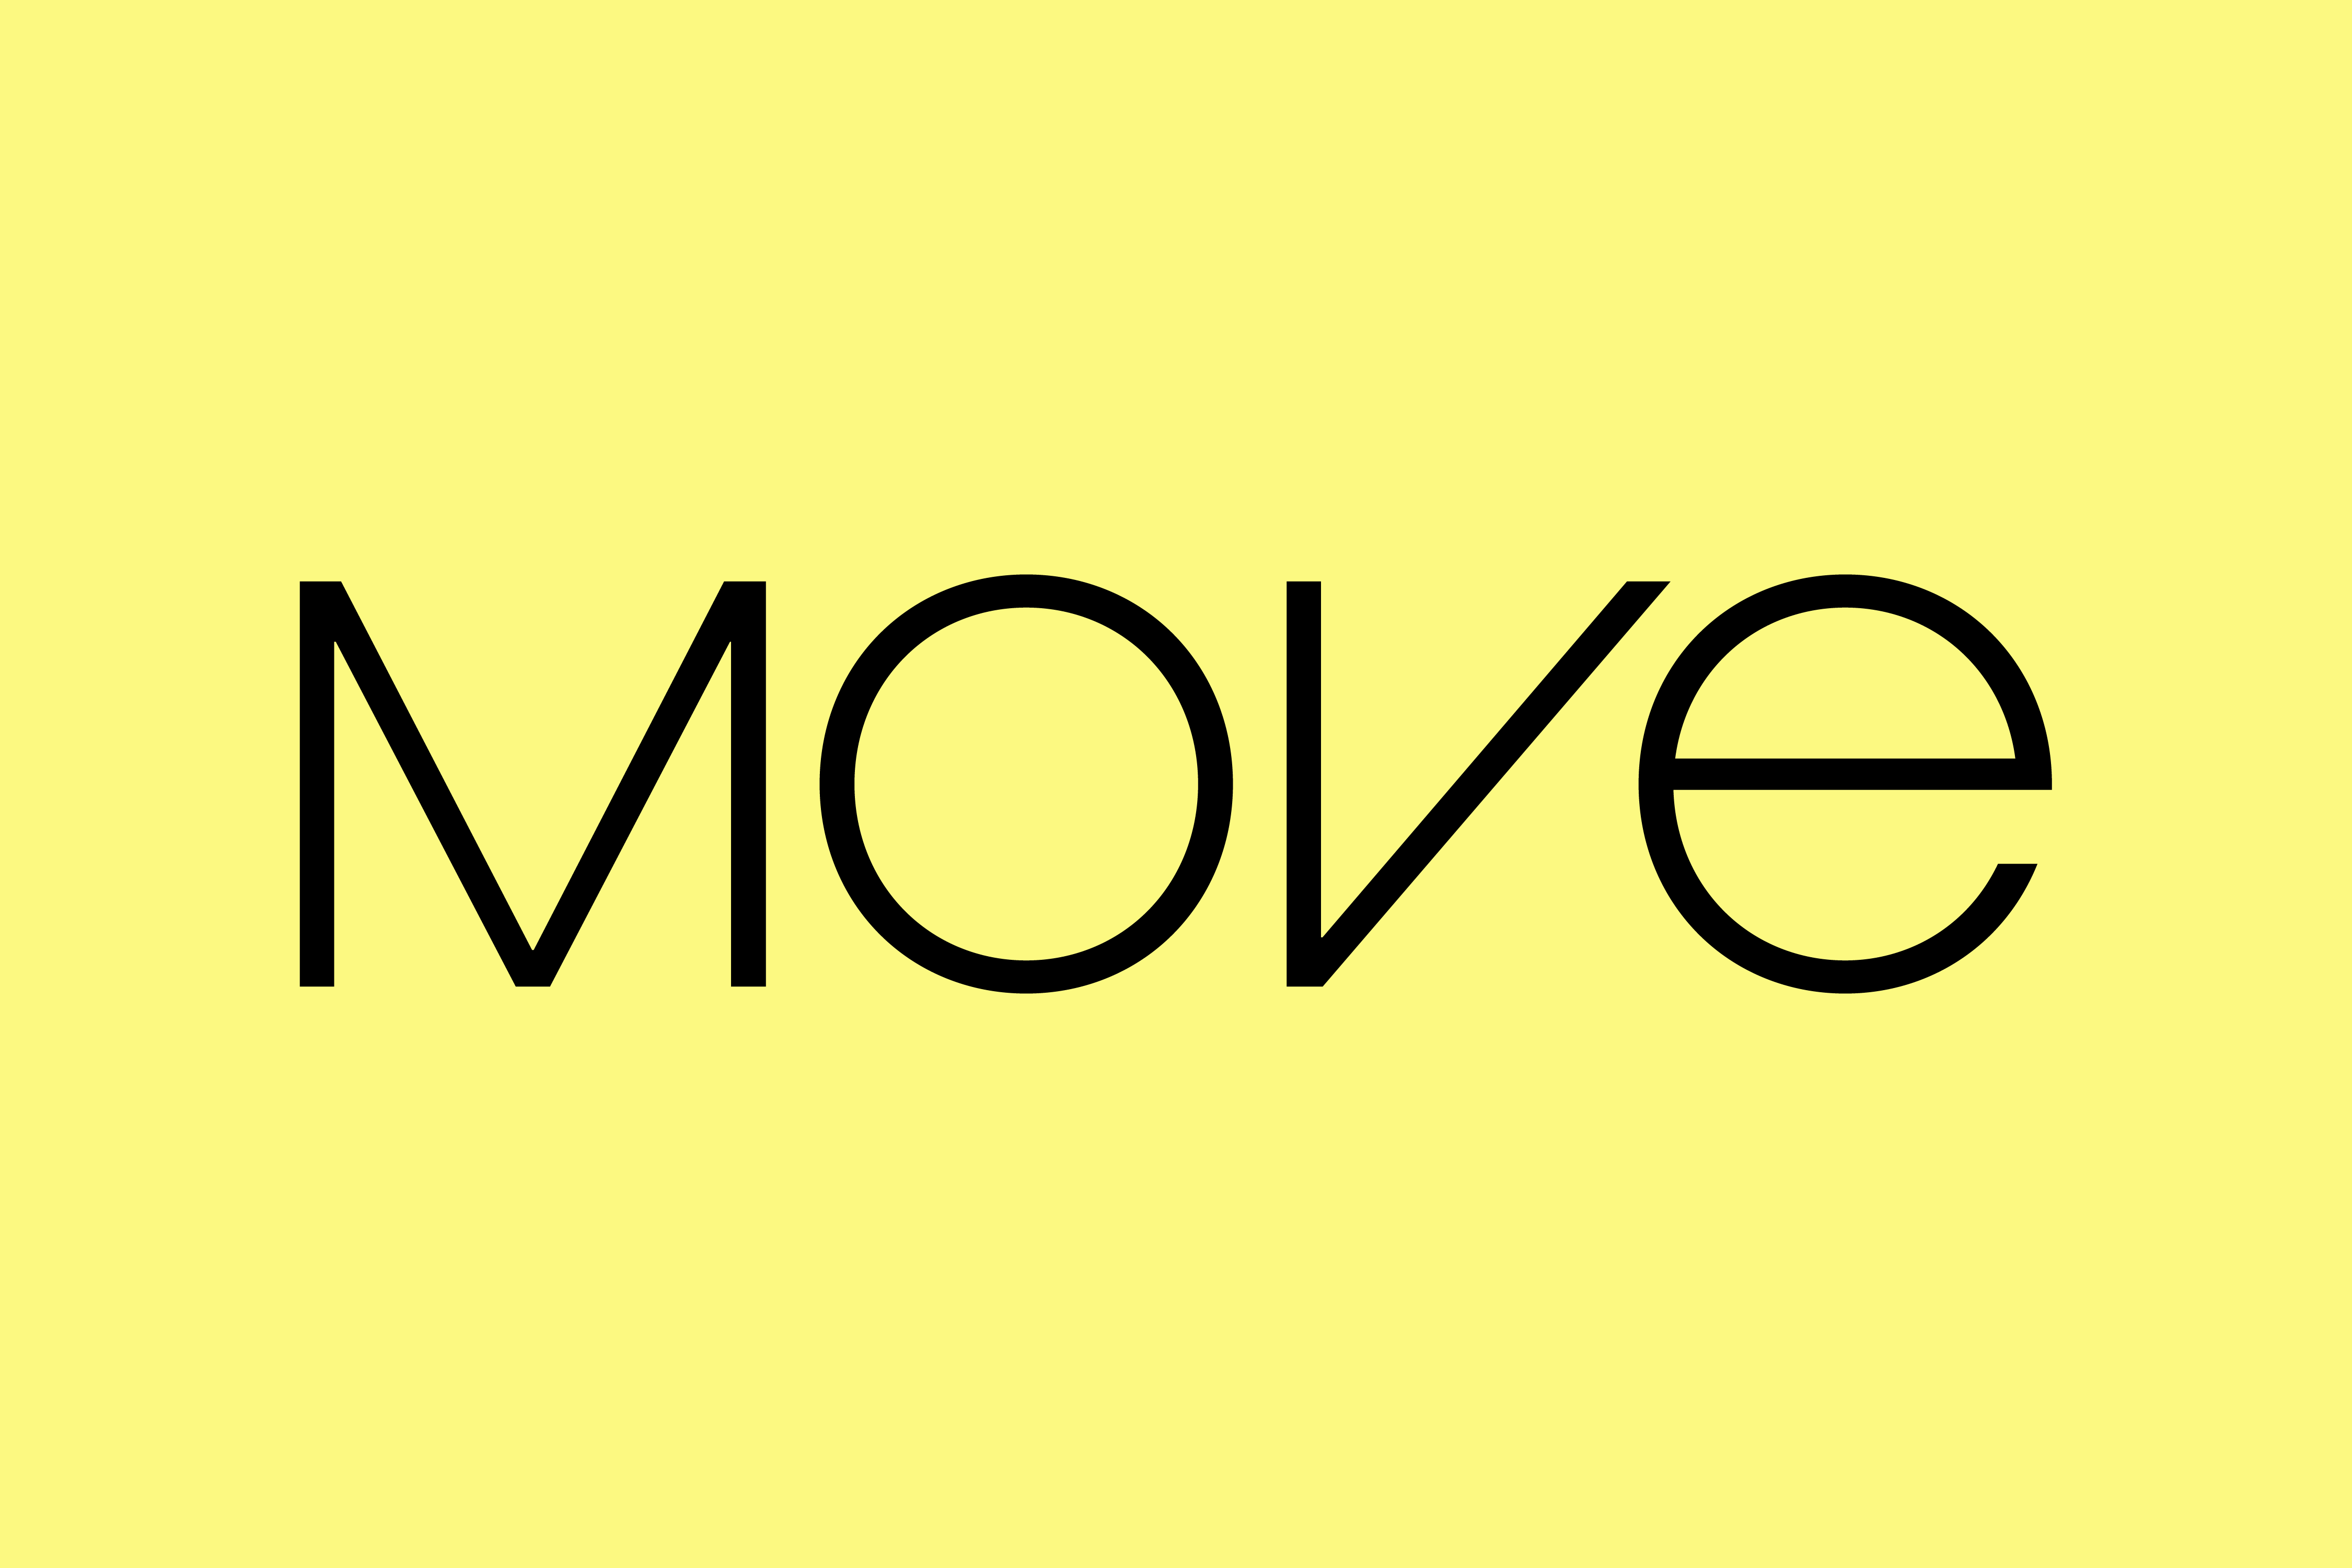 hm move cover